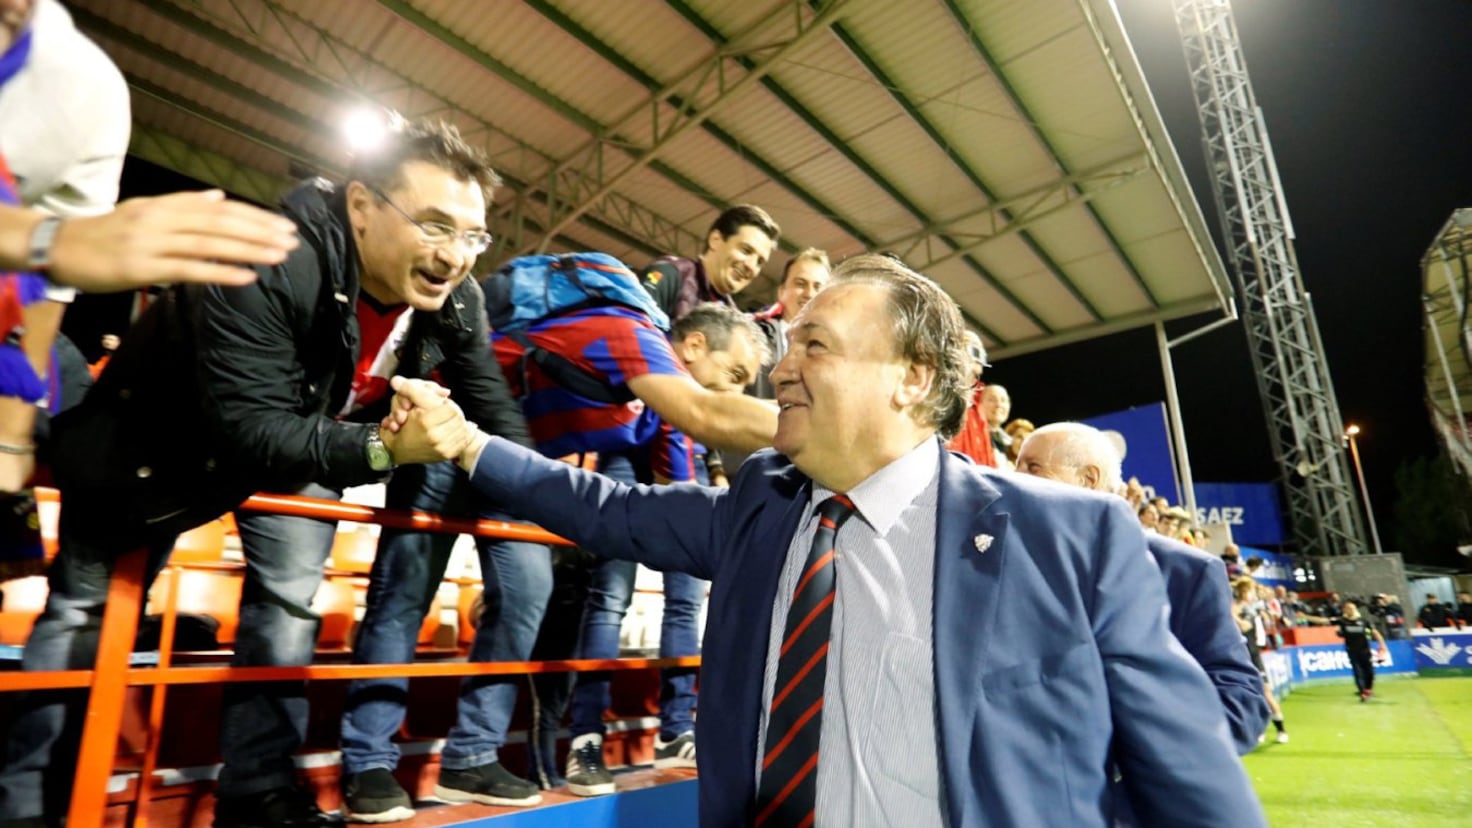 Agustín Lasaosa Returns as President of SD Huesca After Legal Clearance